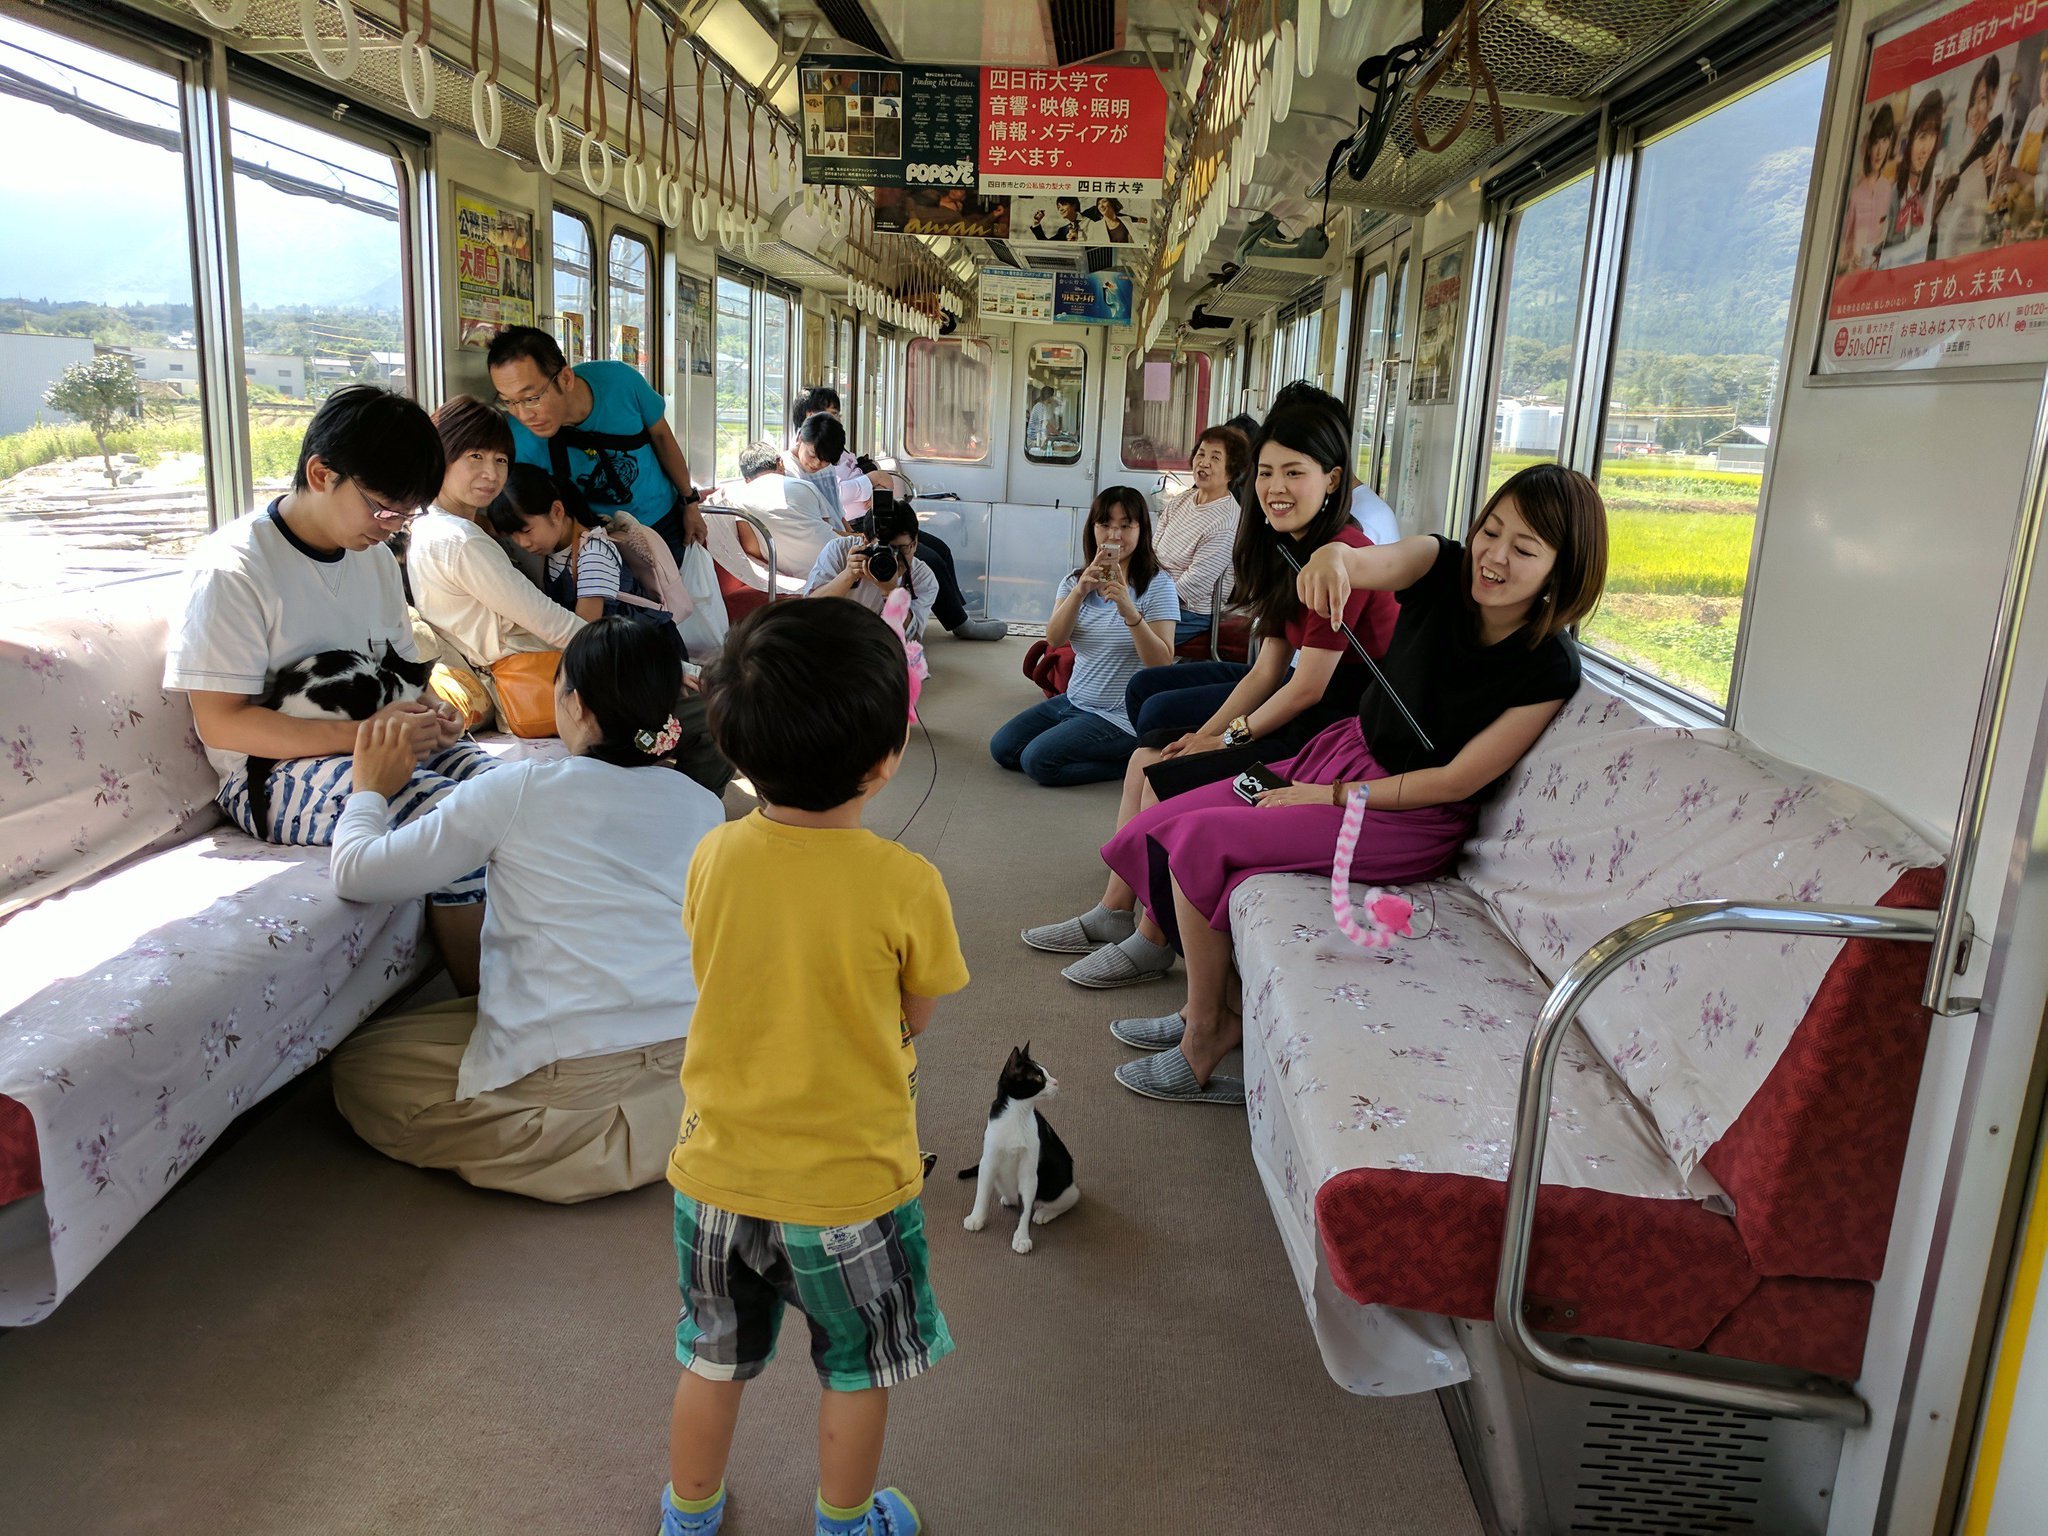 djwjbeuv4aapp3p.jpg?resize=1200,630 - Au Japon, des chats prennent le train avec les passagers pour inciter à l'adoption.